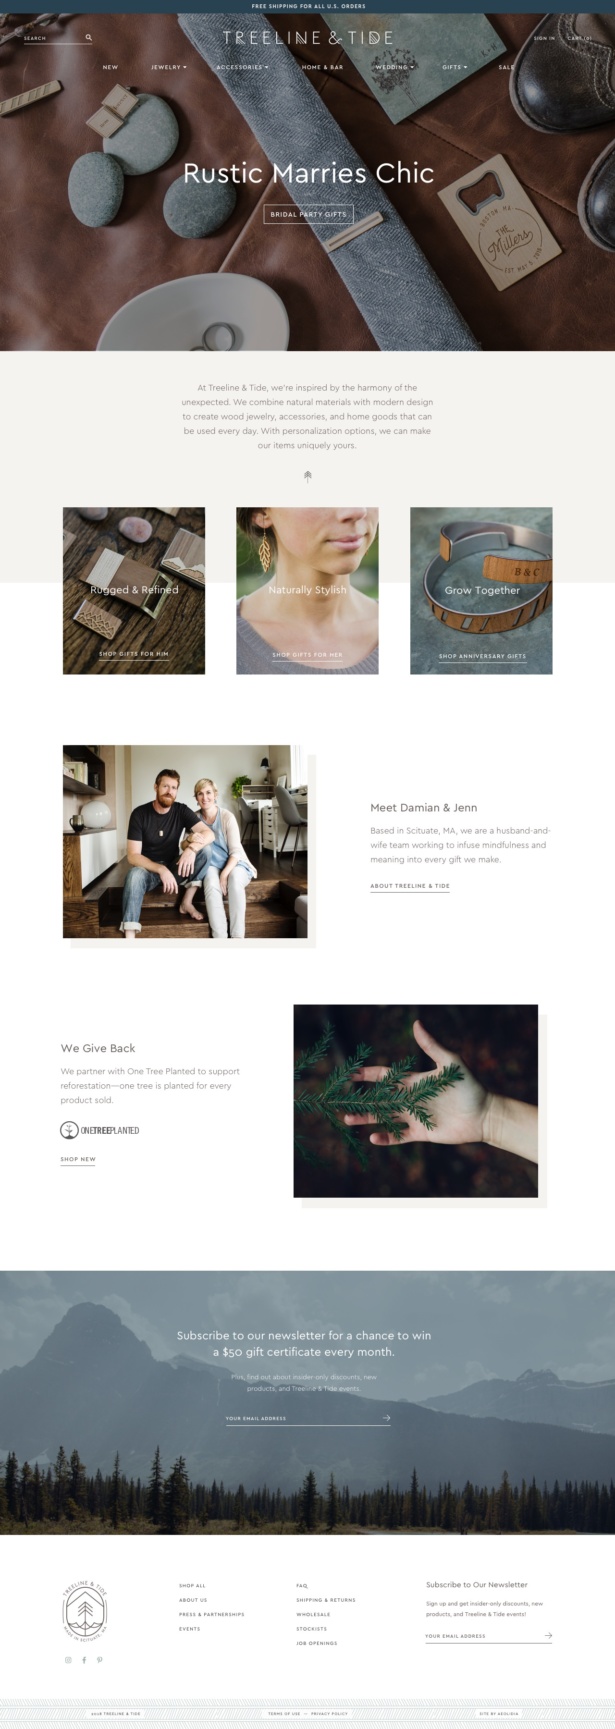 Treeline & Tide custom Shopify website for laser-cut jewelry shop